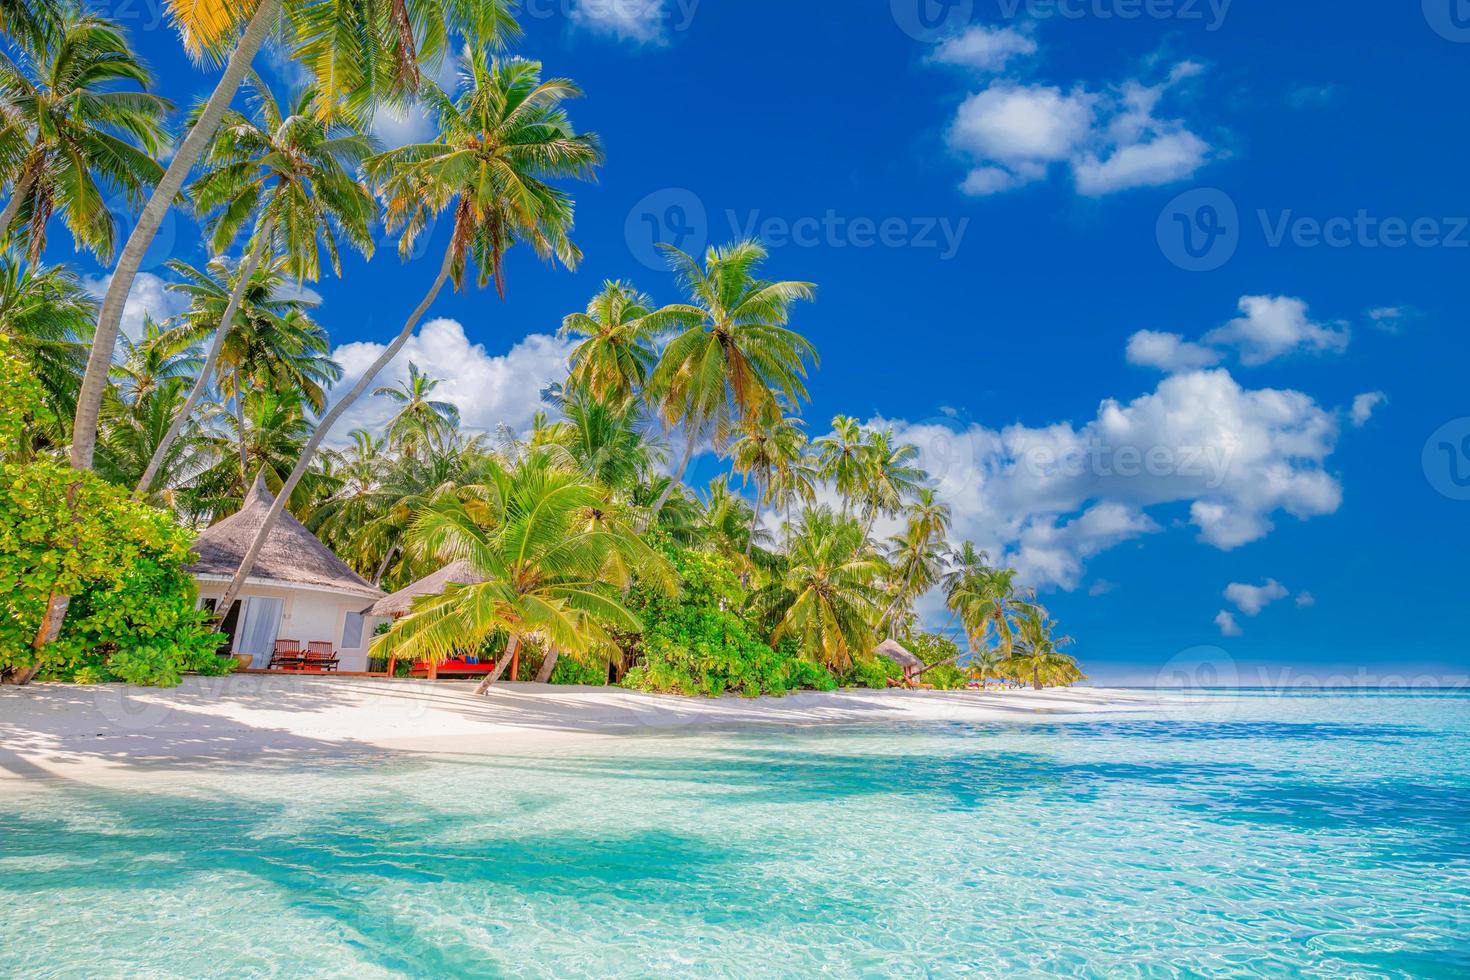 bellissima spiaggia tropicale con sabbia bianca, palme, oceano turchese contro il cielo blu con nuvole in una soleggiata giornata estiva. sfondo del paesaggio perfetto per vacanze rilassanti, isola delle maldive. foto